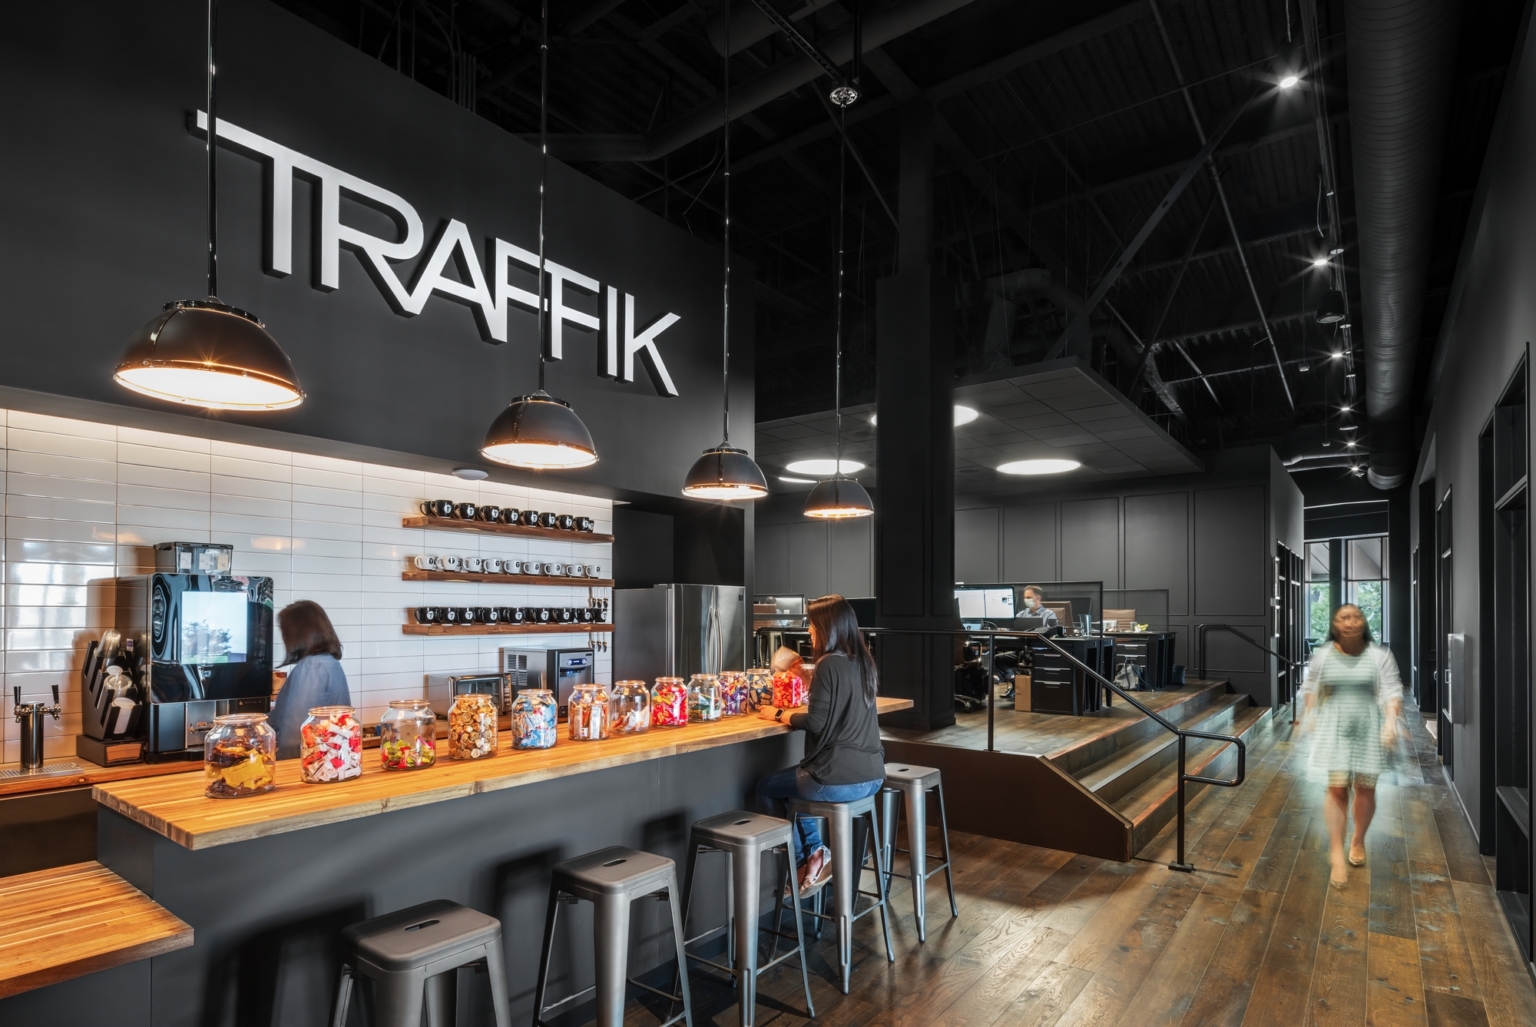 Traffikのオフィス- カリフォルニア州, アーバインのカフェスペース